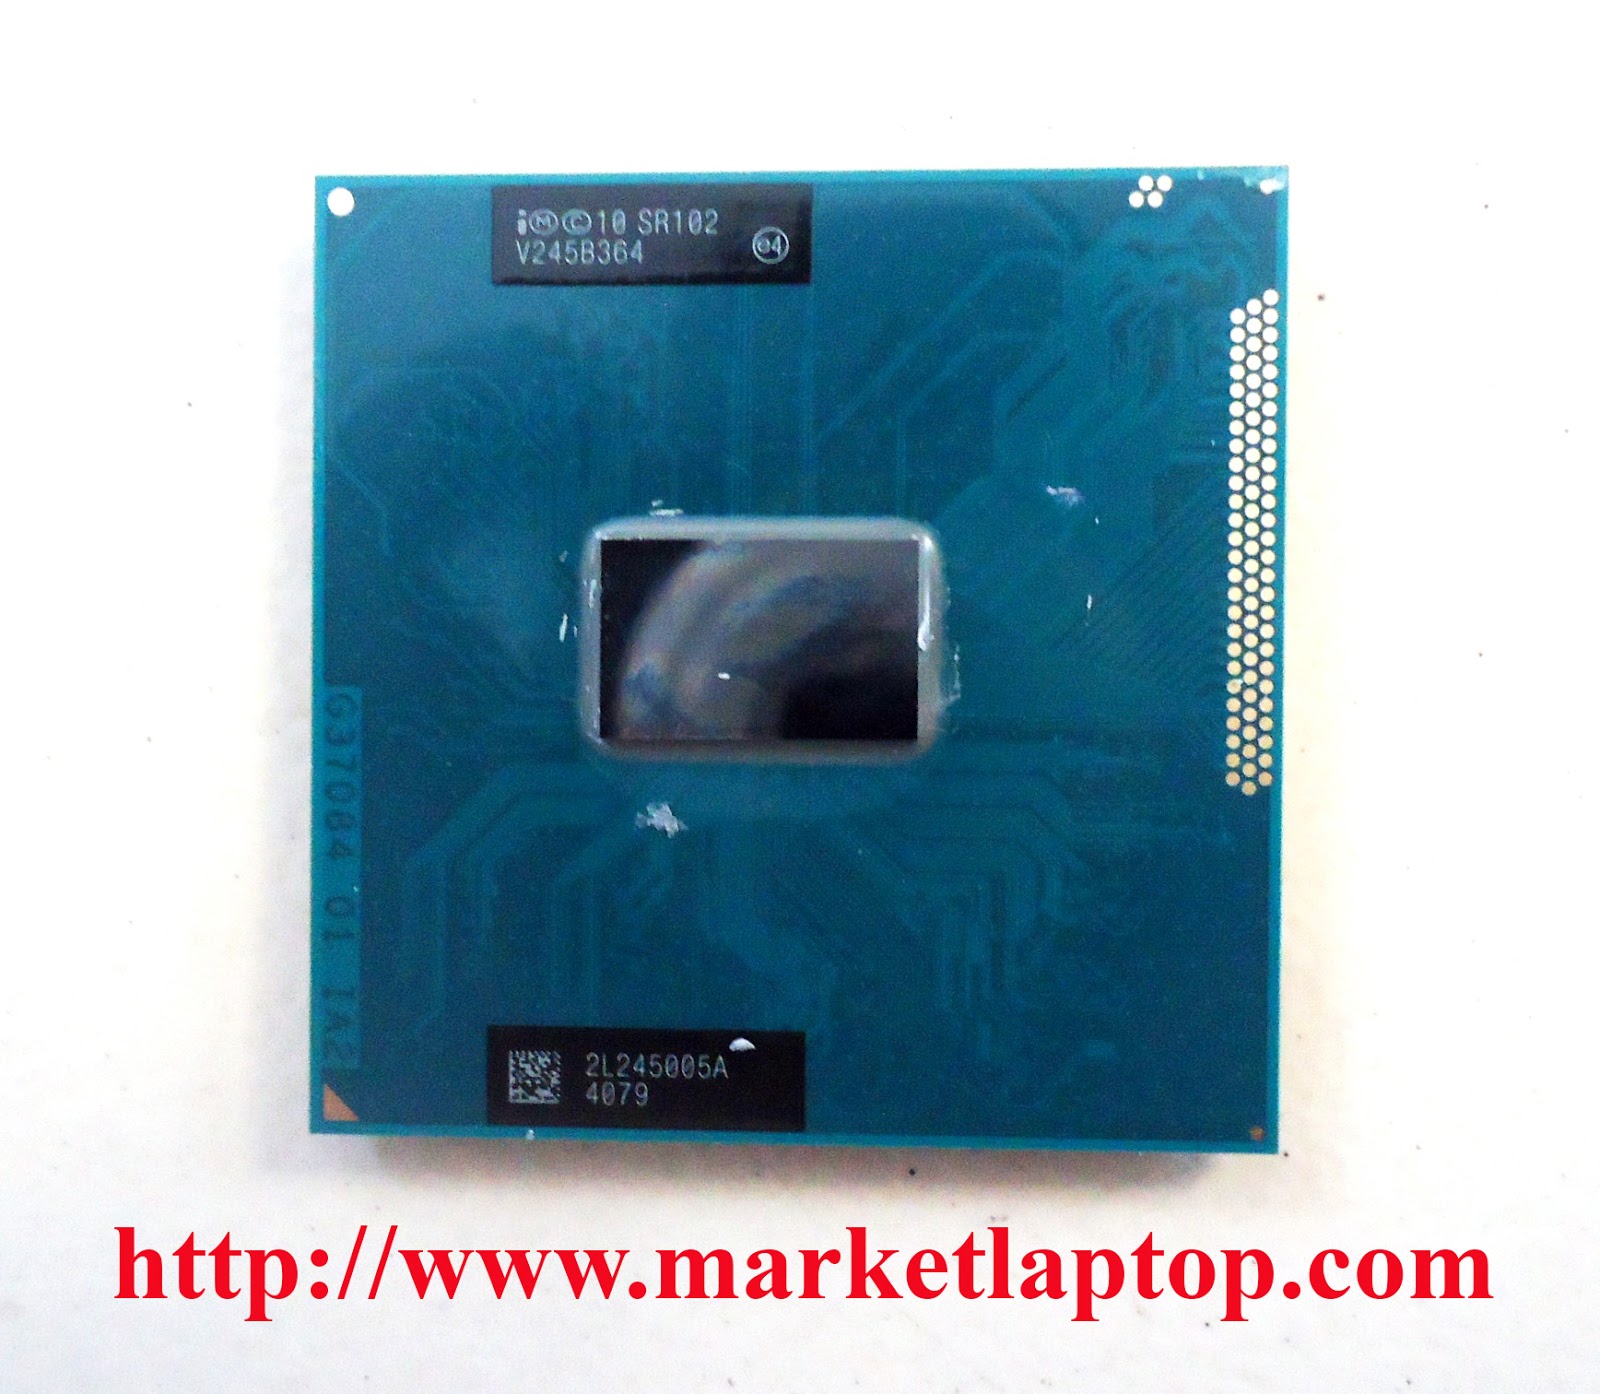 Intel Celeron 1000m. Процессор IMC 10 sr102. Процессор Intel 10 sr102 v248b041. Celeron 1000m чем заменить.